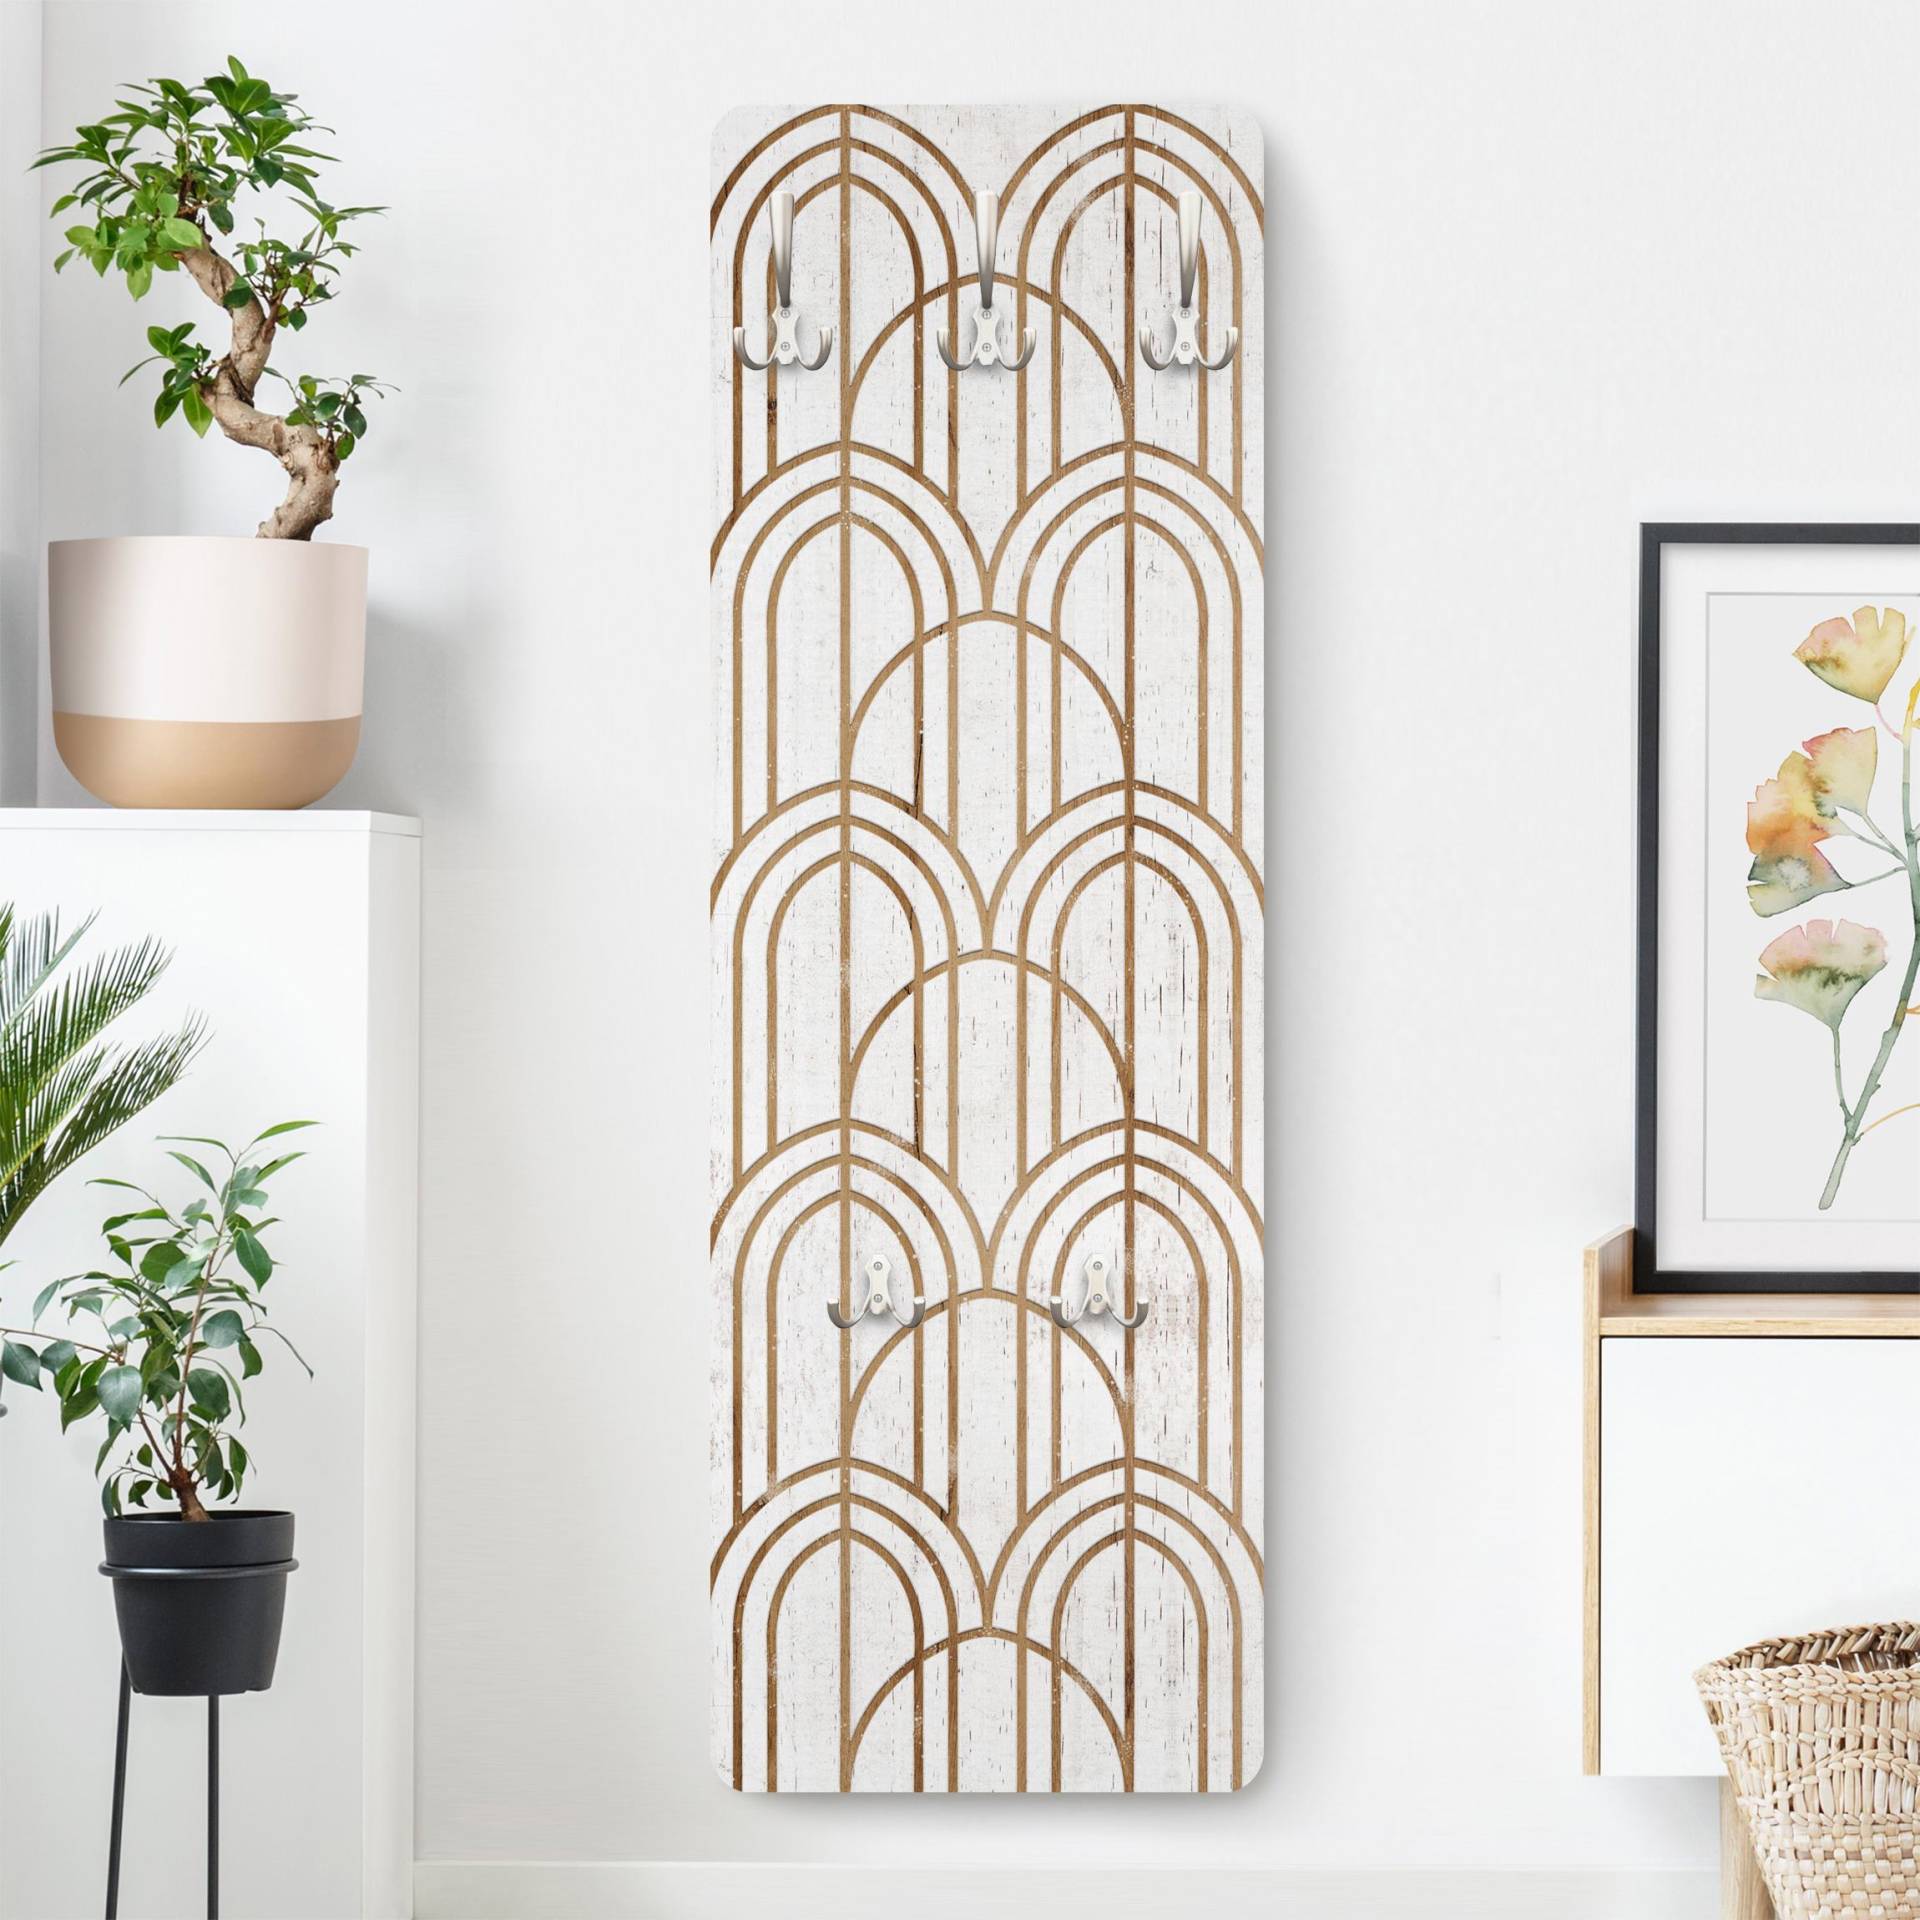 Wandgarderobe Art Deco Muster auf Holz von Klebefieber